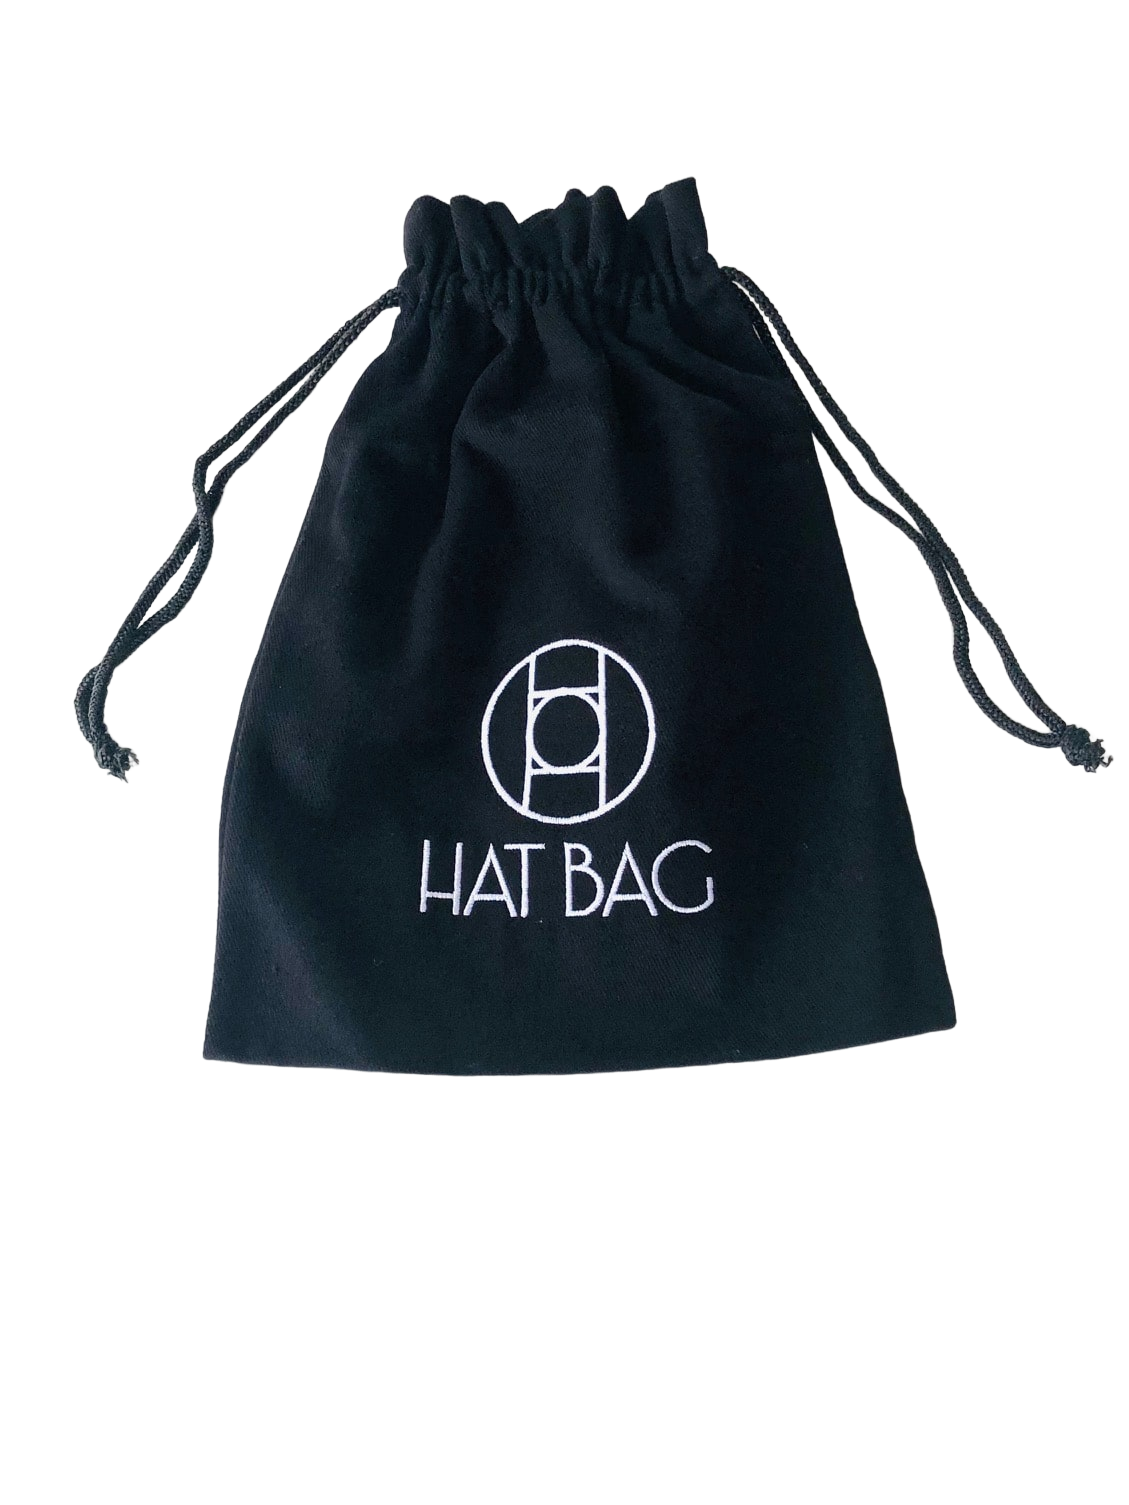 Huttasche "Los Angeles" Huttasche aus schwarzem Leder und verstellbarem schwarzem Riemen - hat bag paris